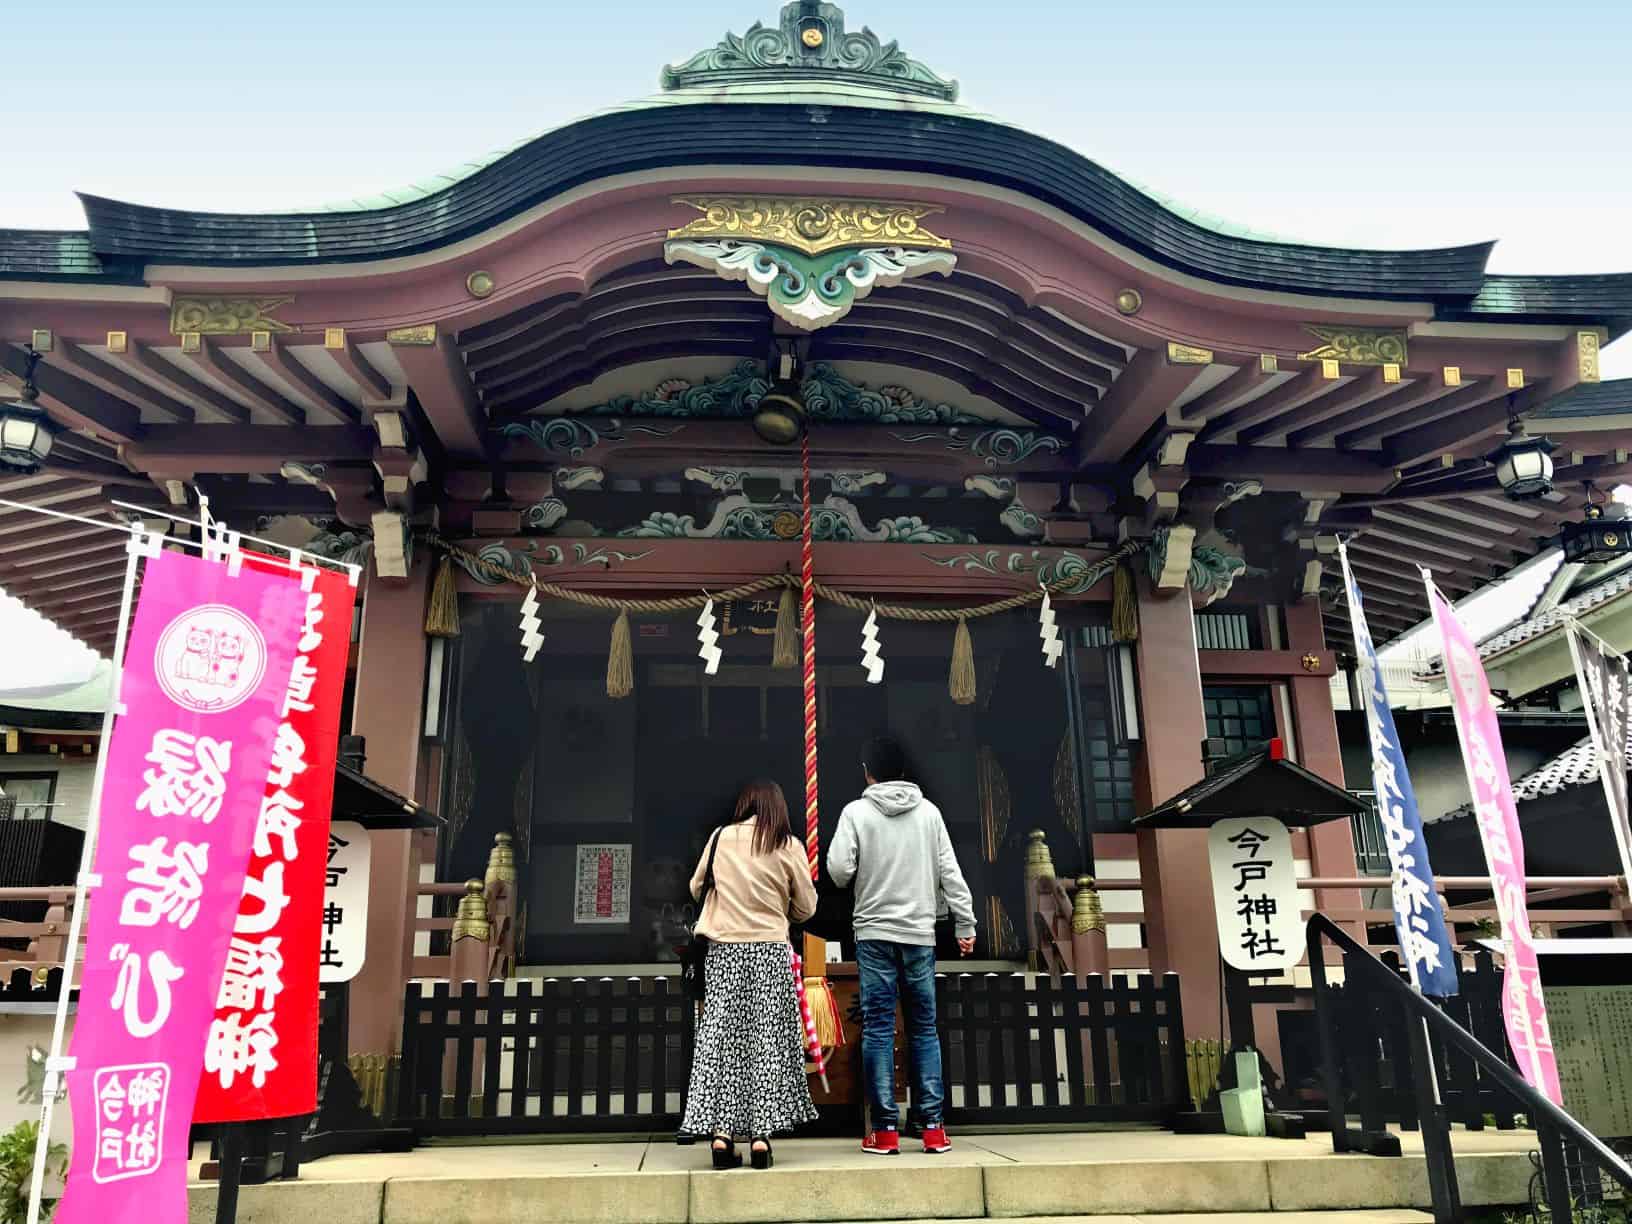 วัด ศาลเจ้าอิมาโดะ (Imado Shrine) ขอผู้ ขอพรความรัก โตเกียว